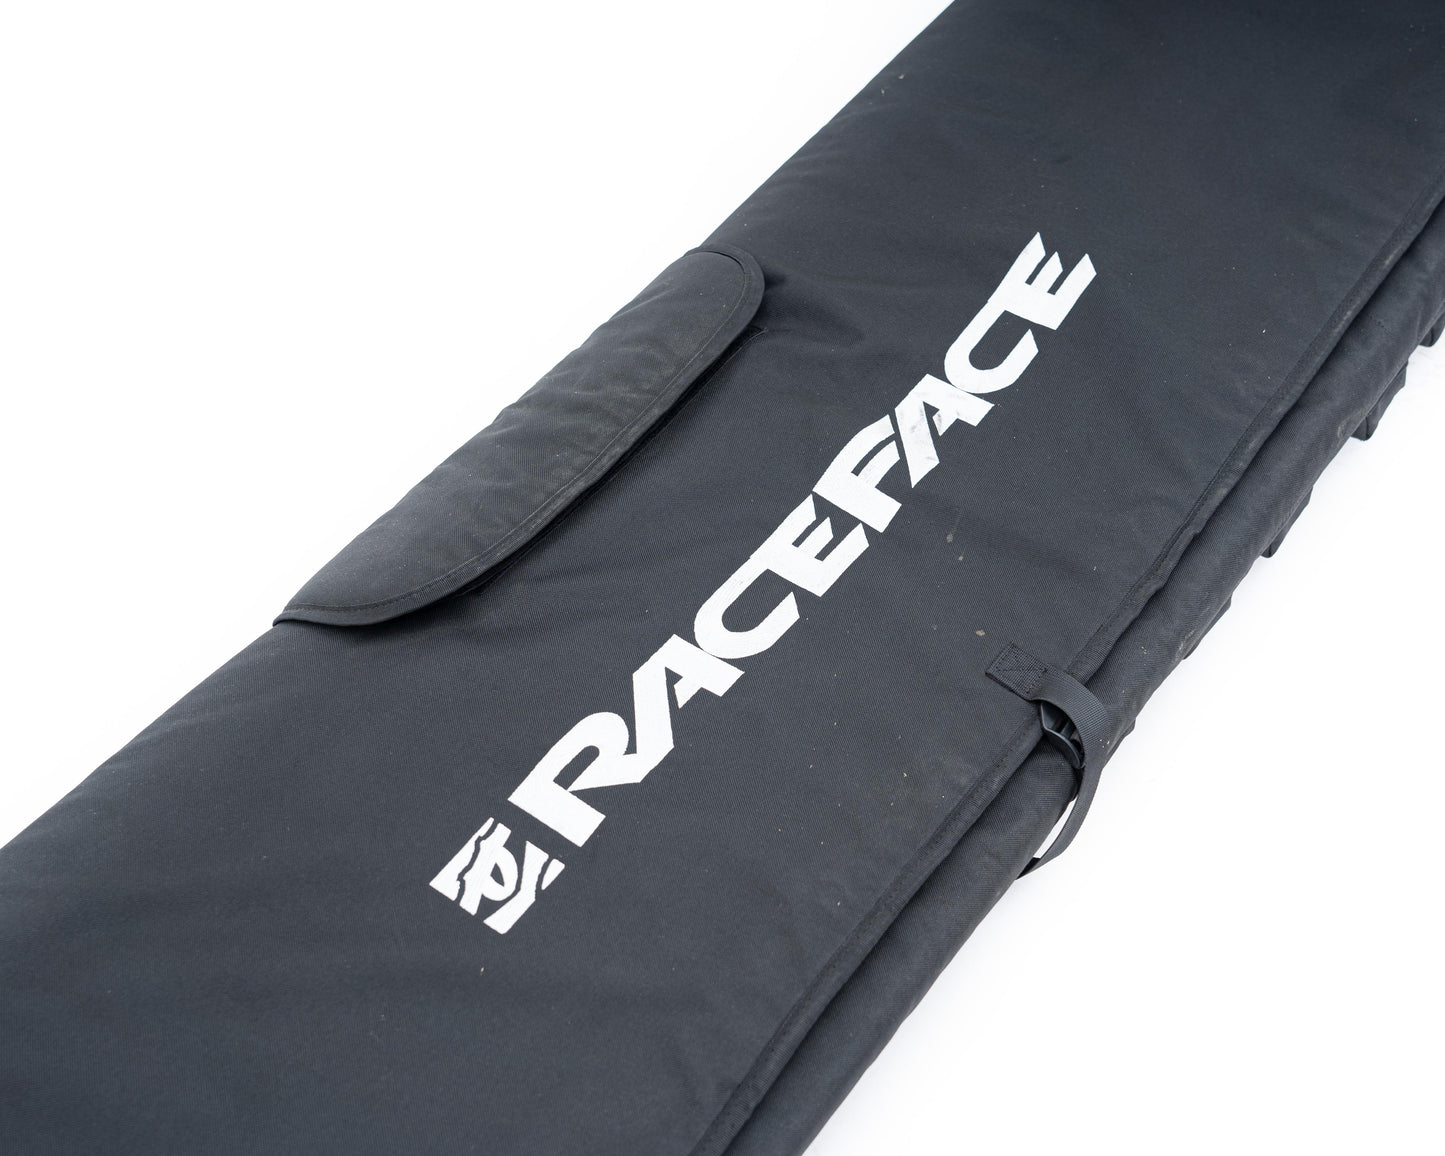 RaceFace Tailgate Pad Blk 61" L/XL